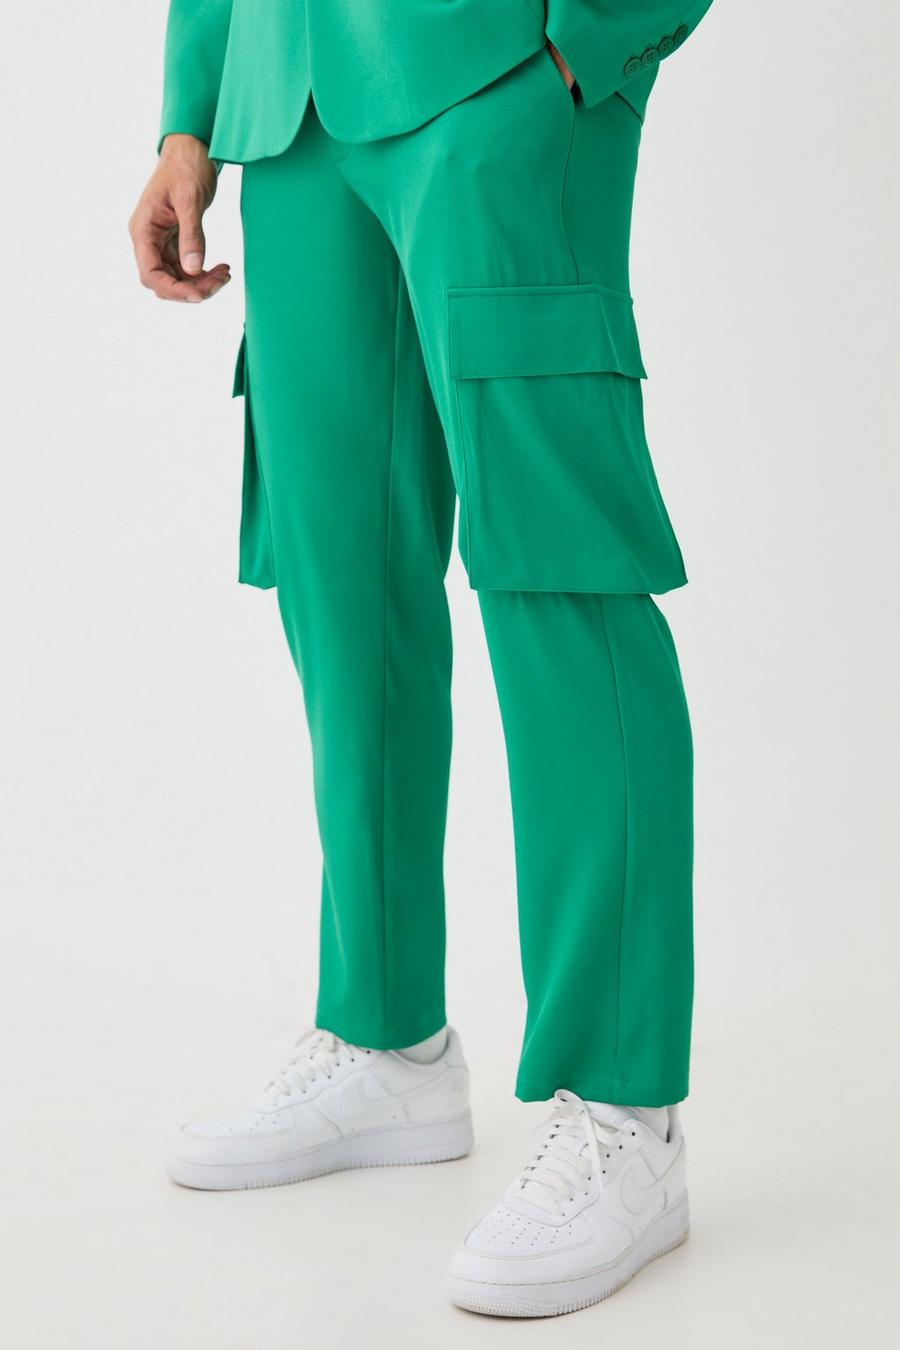 Pantalón cargo entallado - pieza intercambiable, Green